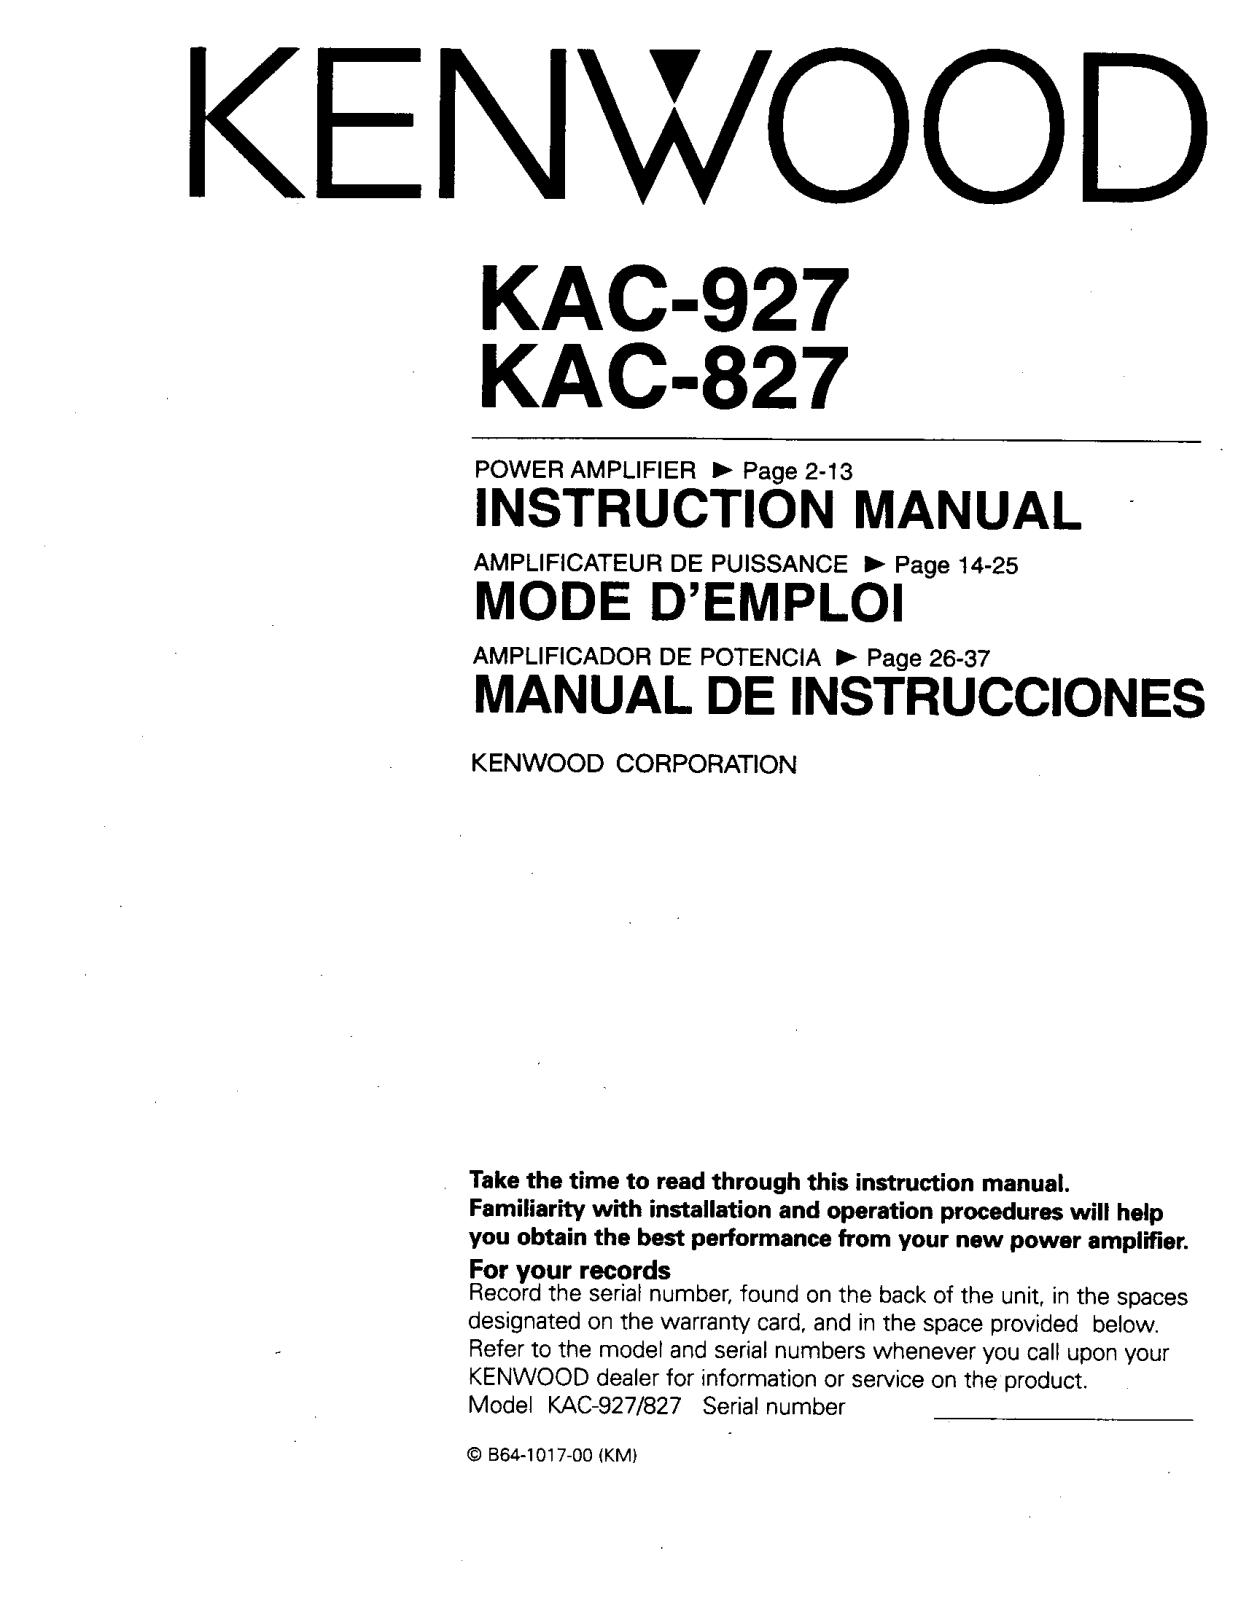 Kenwood KAC-927, KAC-827 Owner's Manual